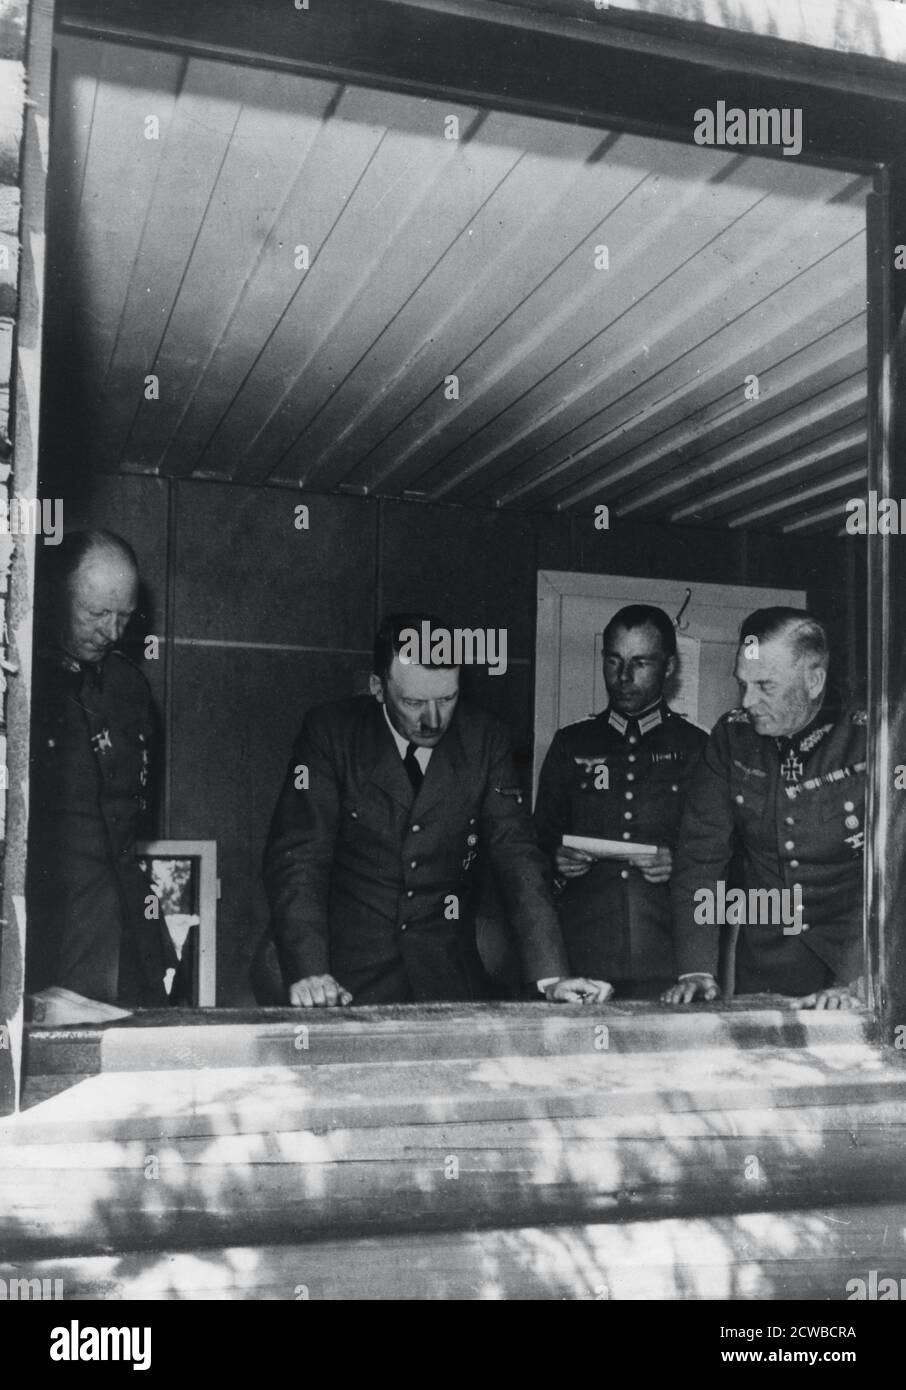 Adolf Hitler durante la invasión de Francia, Segunda Guerra Mundial, 1940. Hitler se muestra estudiando mapas en su sede flanqueada por el general Alfred Jodl, jefe de operaciones, el mayor Deile y el general Wilhelm Keitel. El fotógrafo es desconocido. Foto de stock